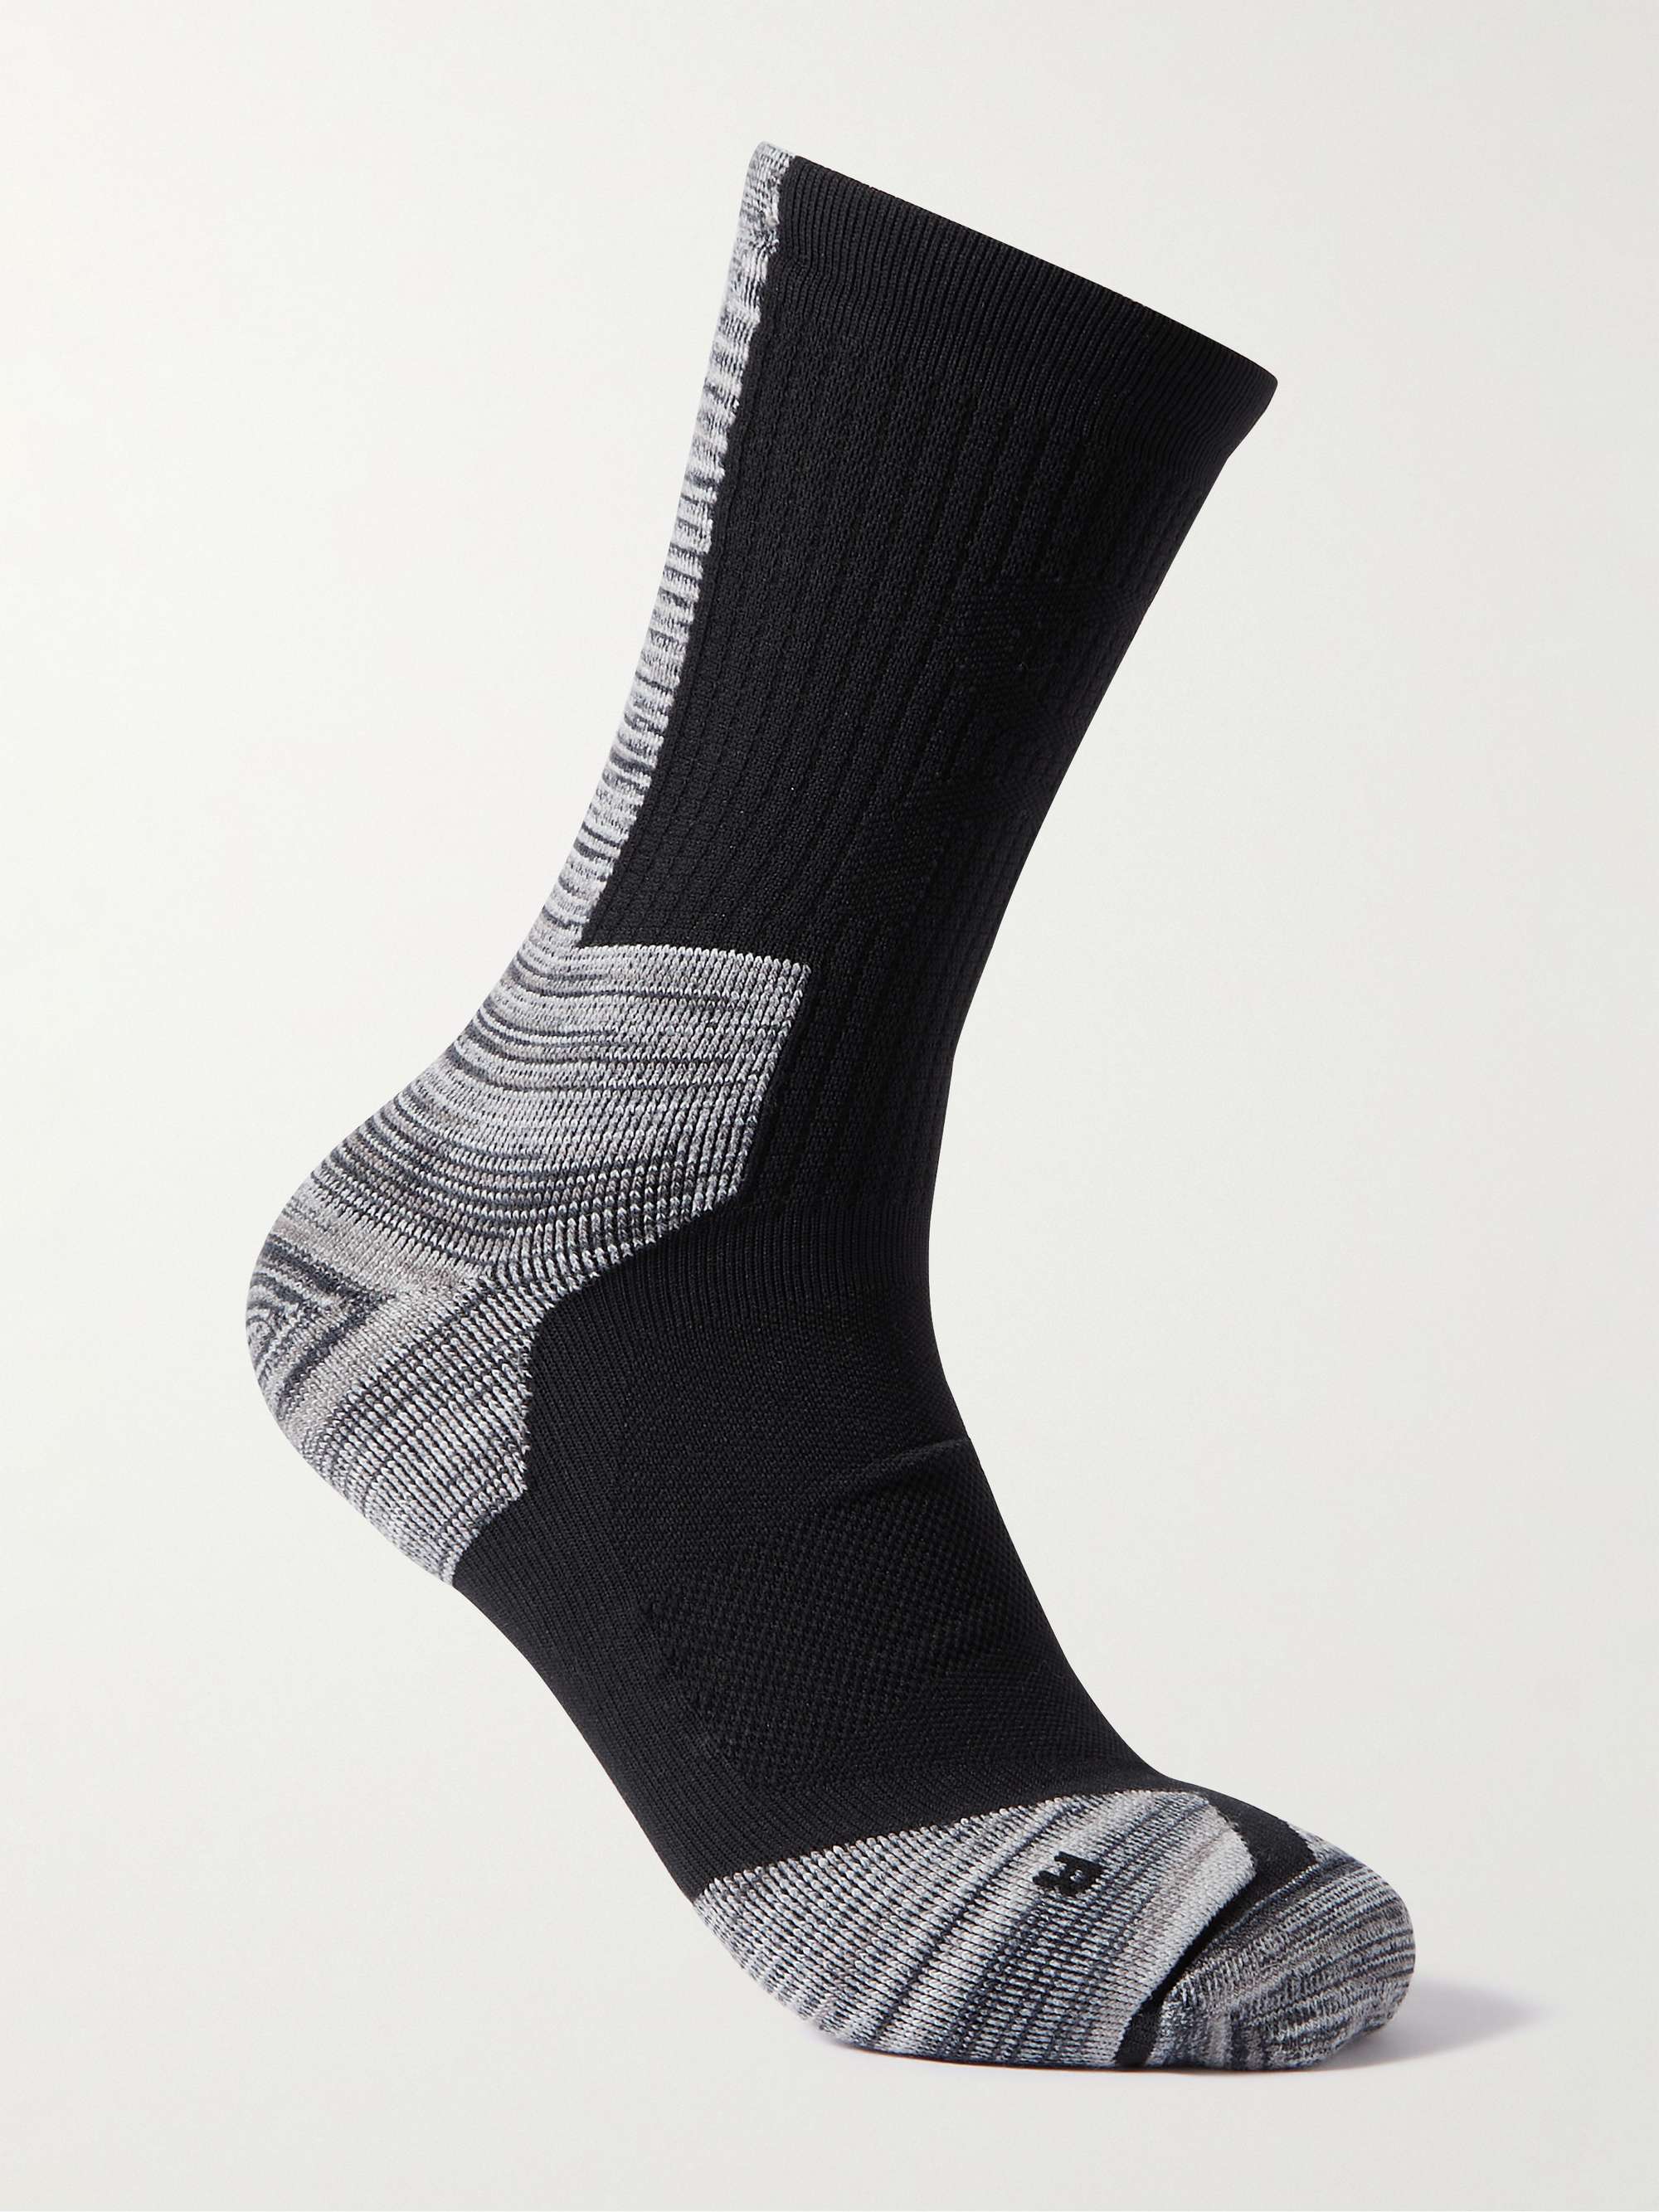 ON-RUNNING Explorer Space-Dyed Stretch-Knit Socks for Men | MR PORTER